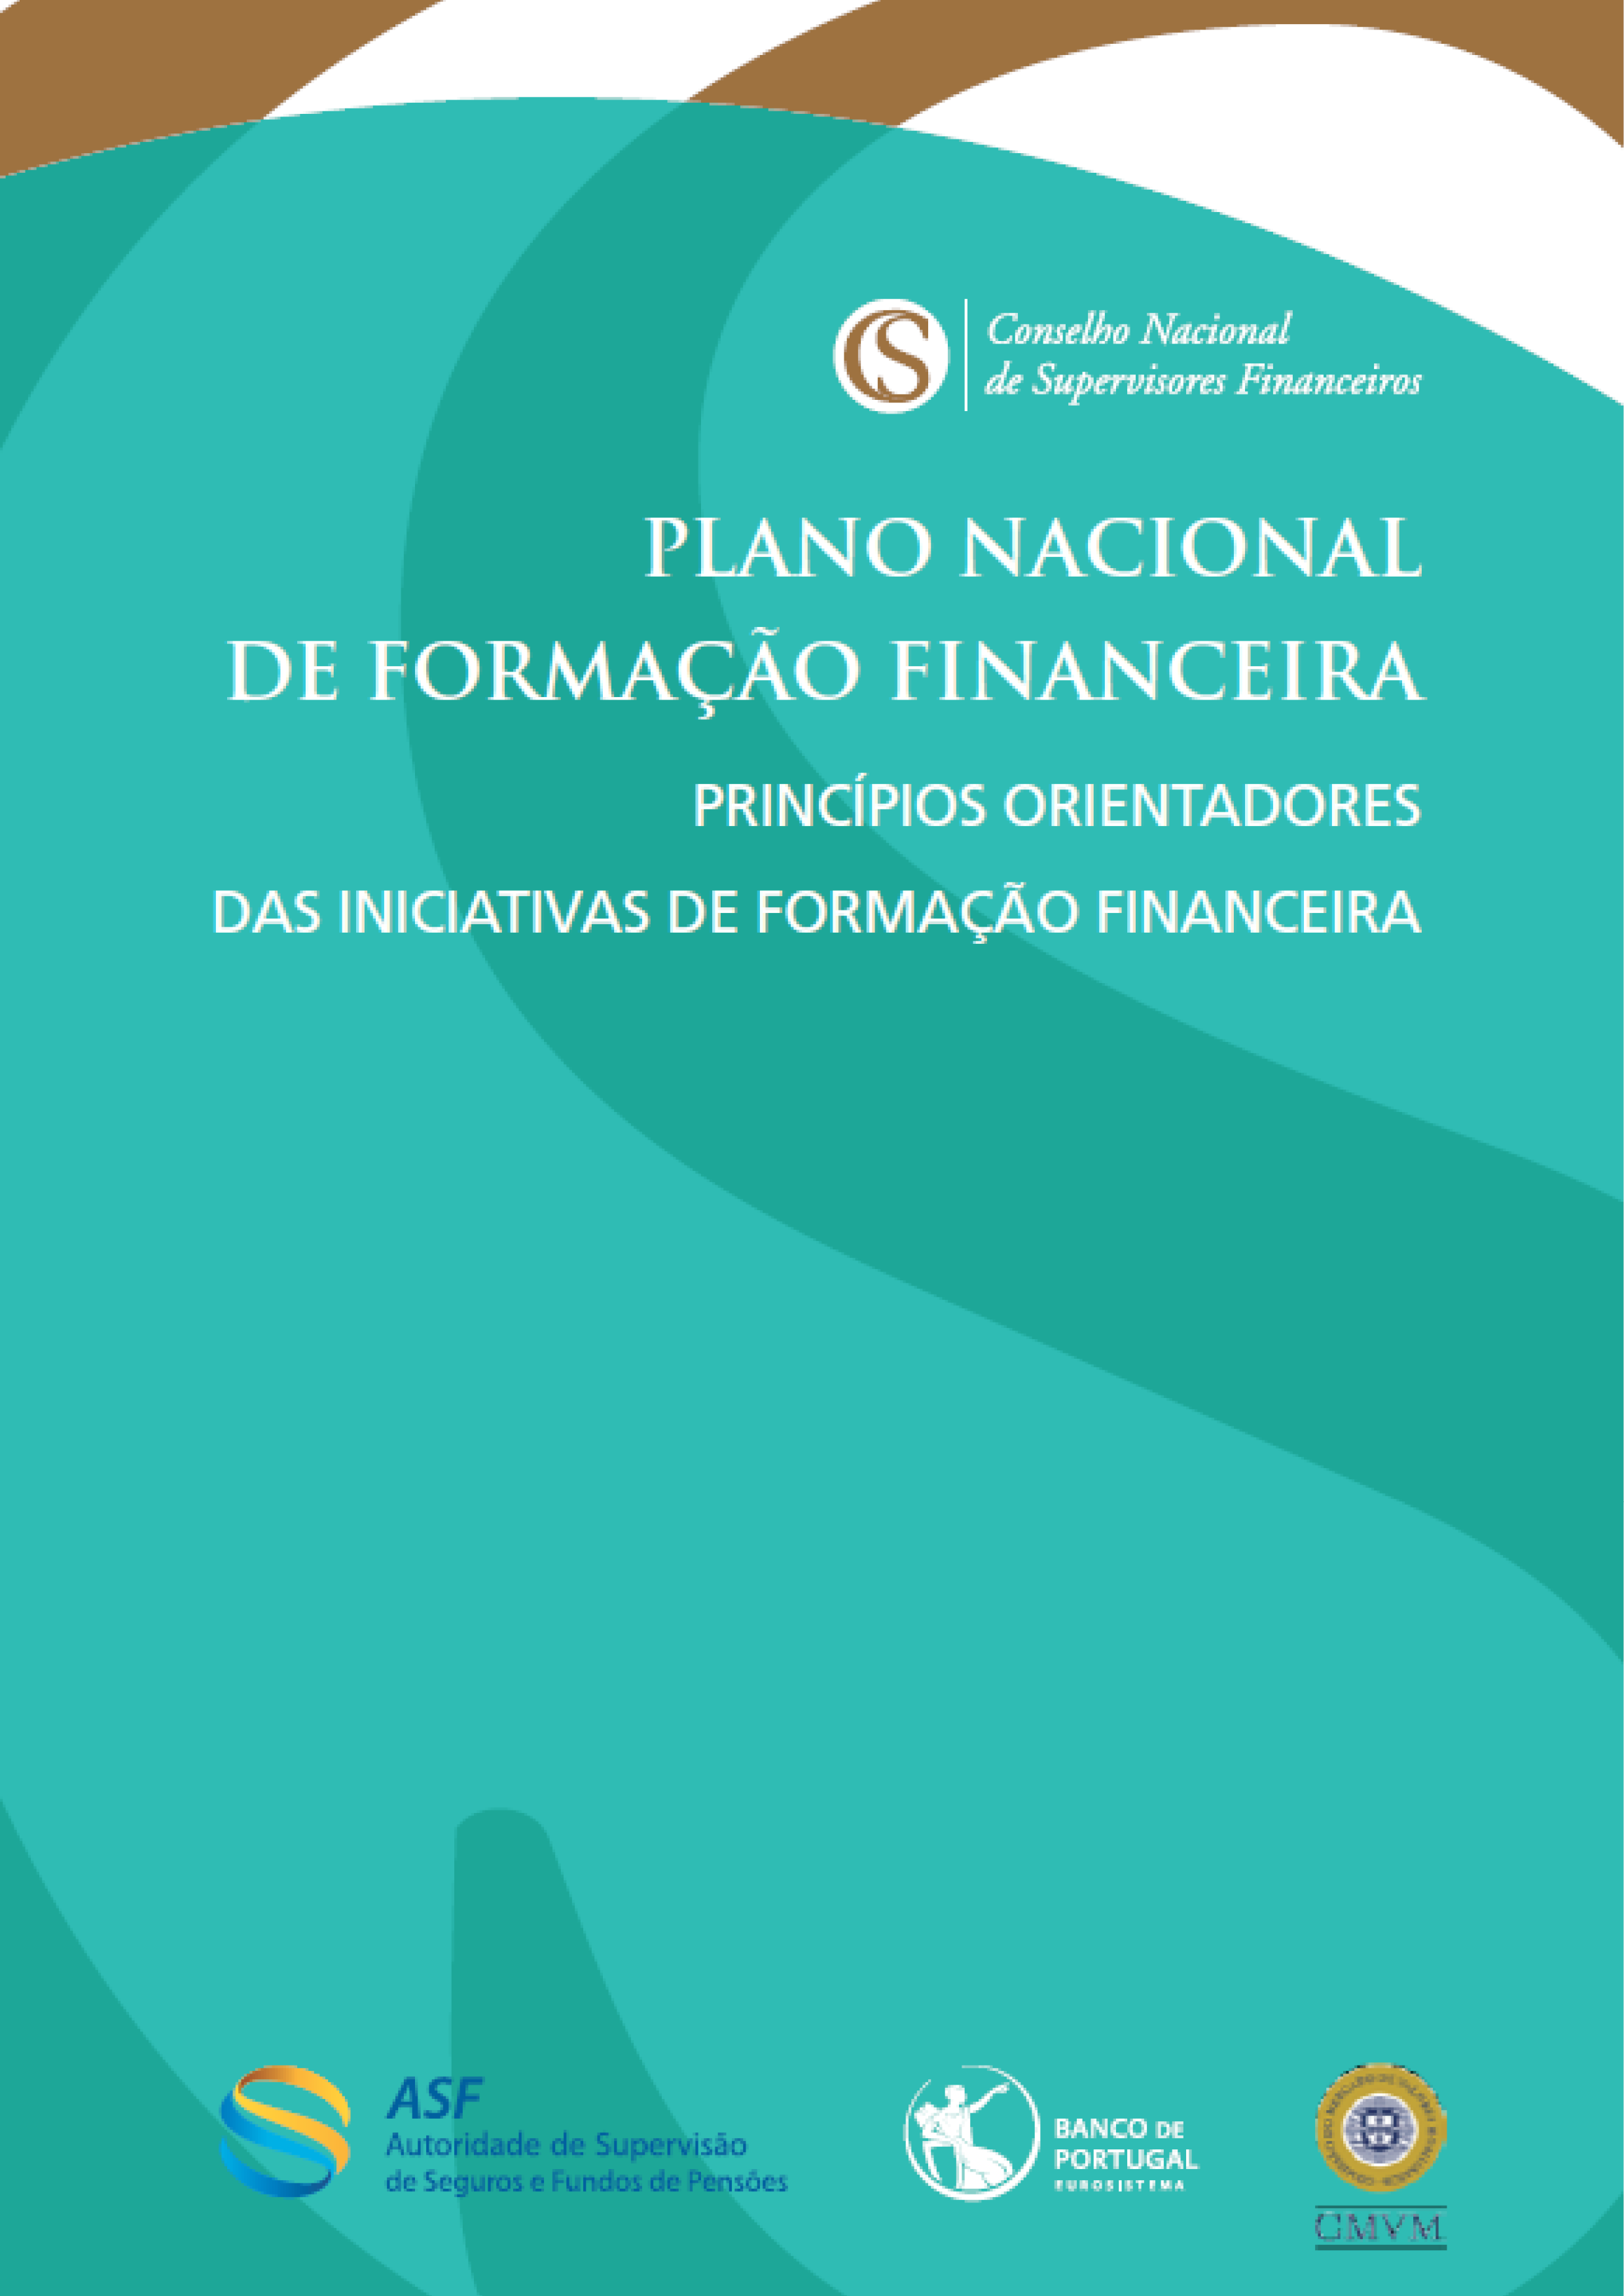 Princípios Orientadores de Formação Financeira do Plano